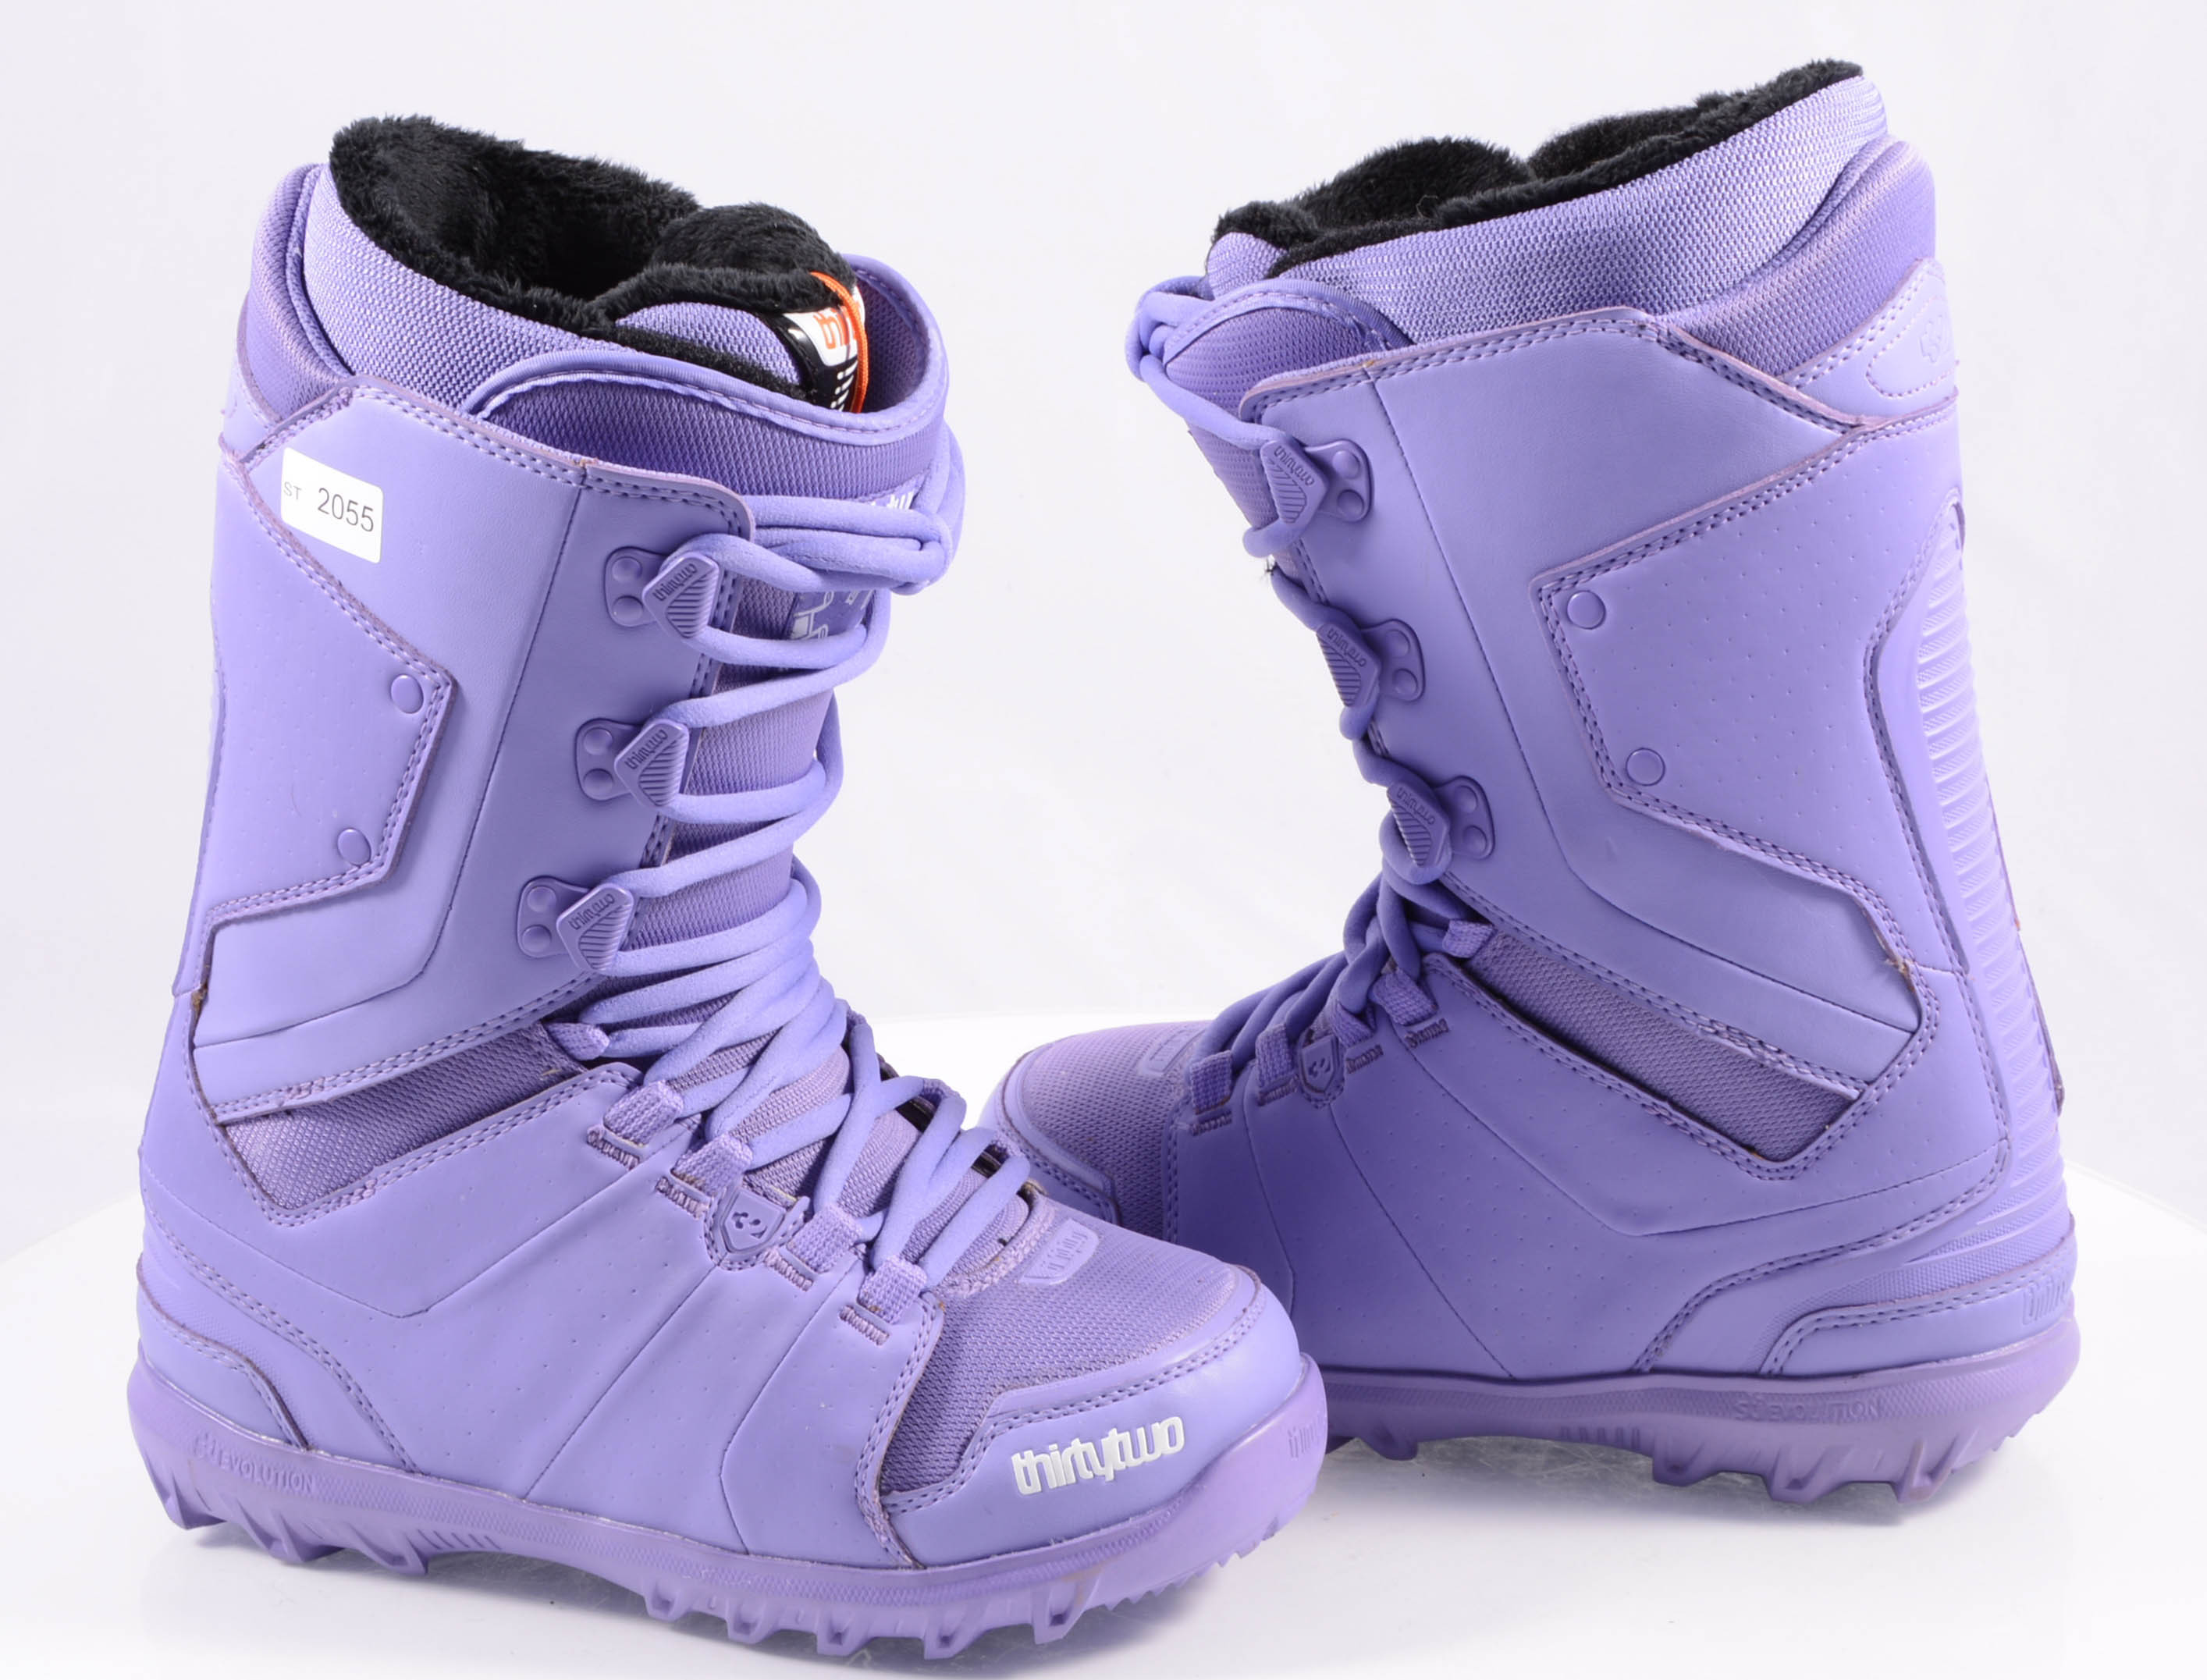 castigo Capitán Brie Resolver botas snowboard nuevas THIRTYTWO WOMEN'S LASHED, purple ( NUEVAS ) -  Mardosport.es